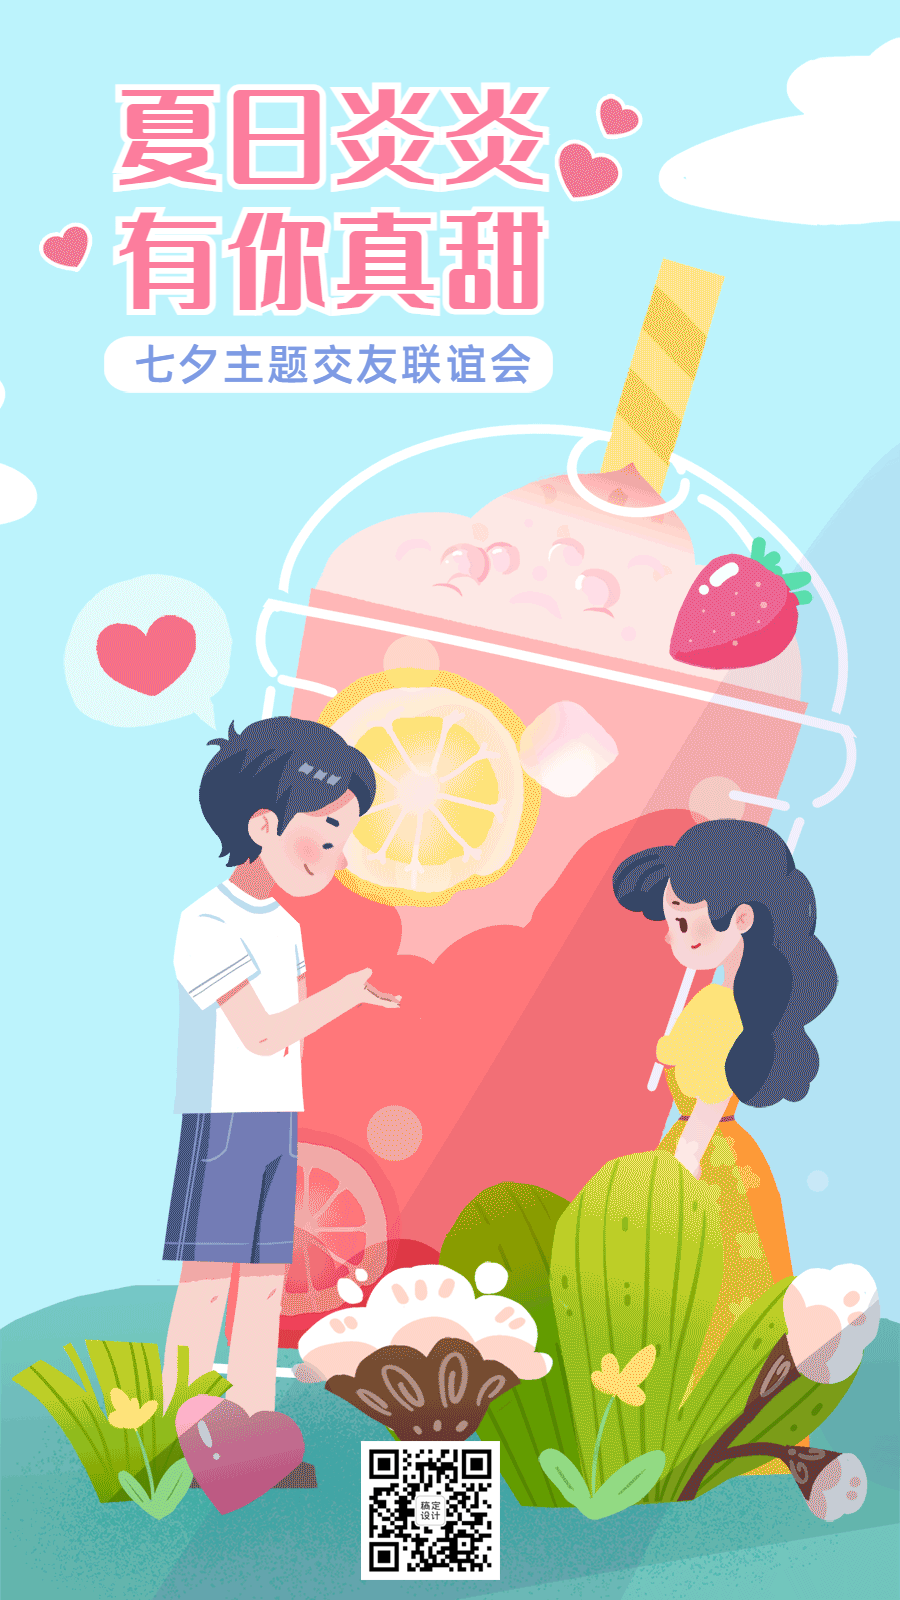 七夕节日活动营销饮品GIF手机海报预览效果